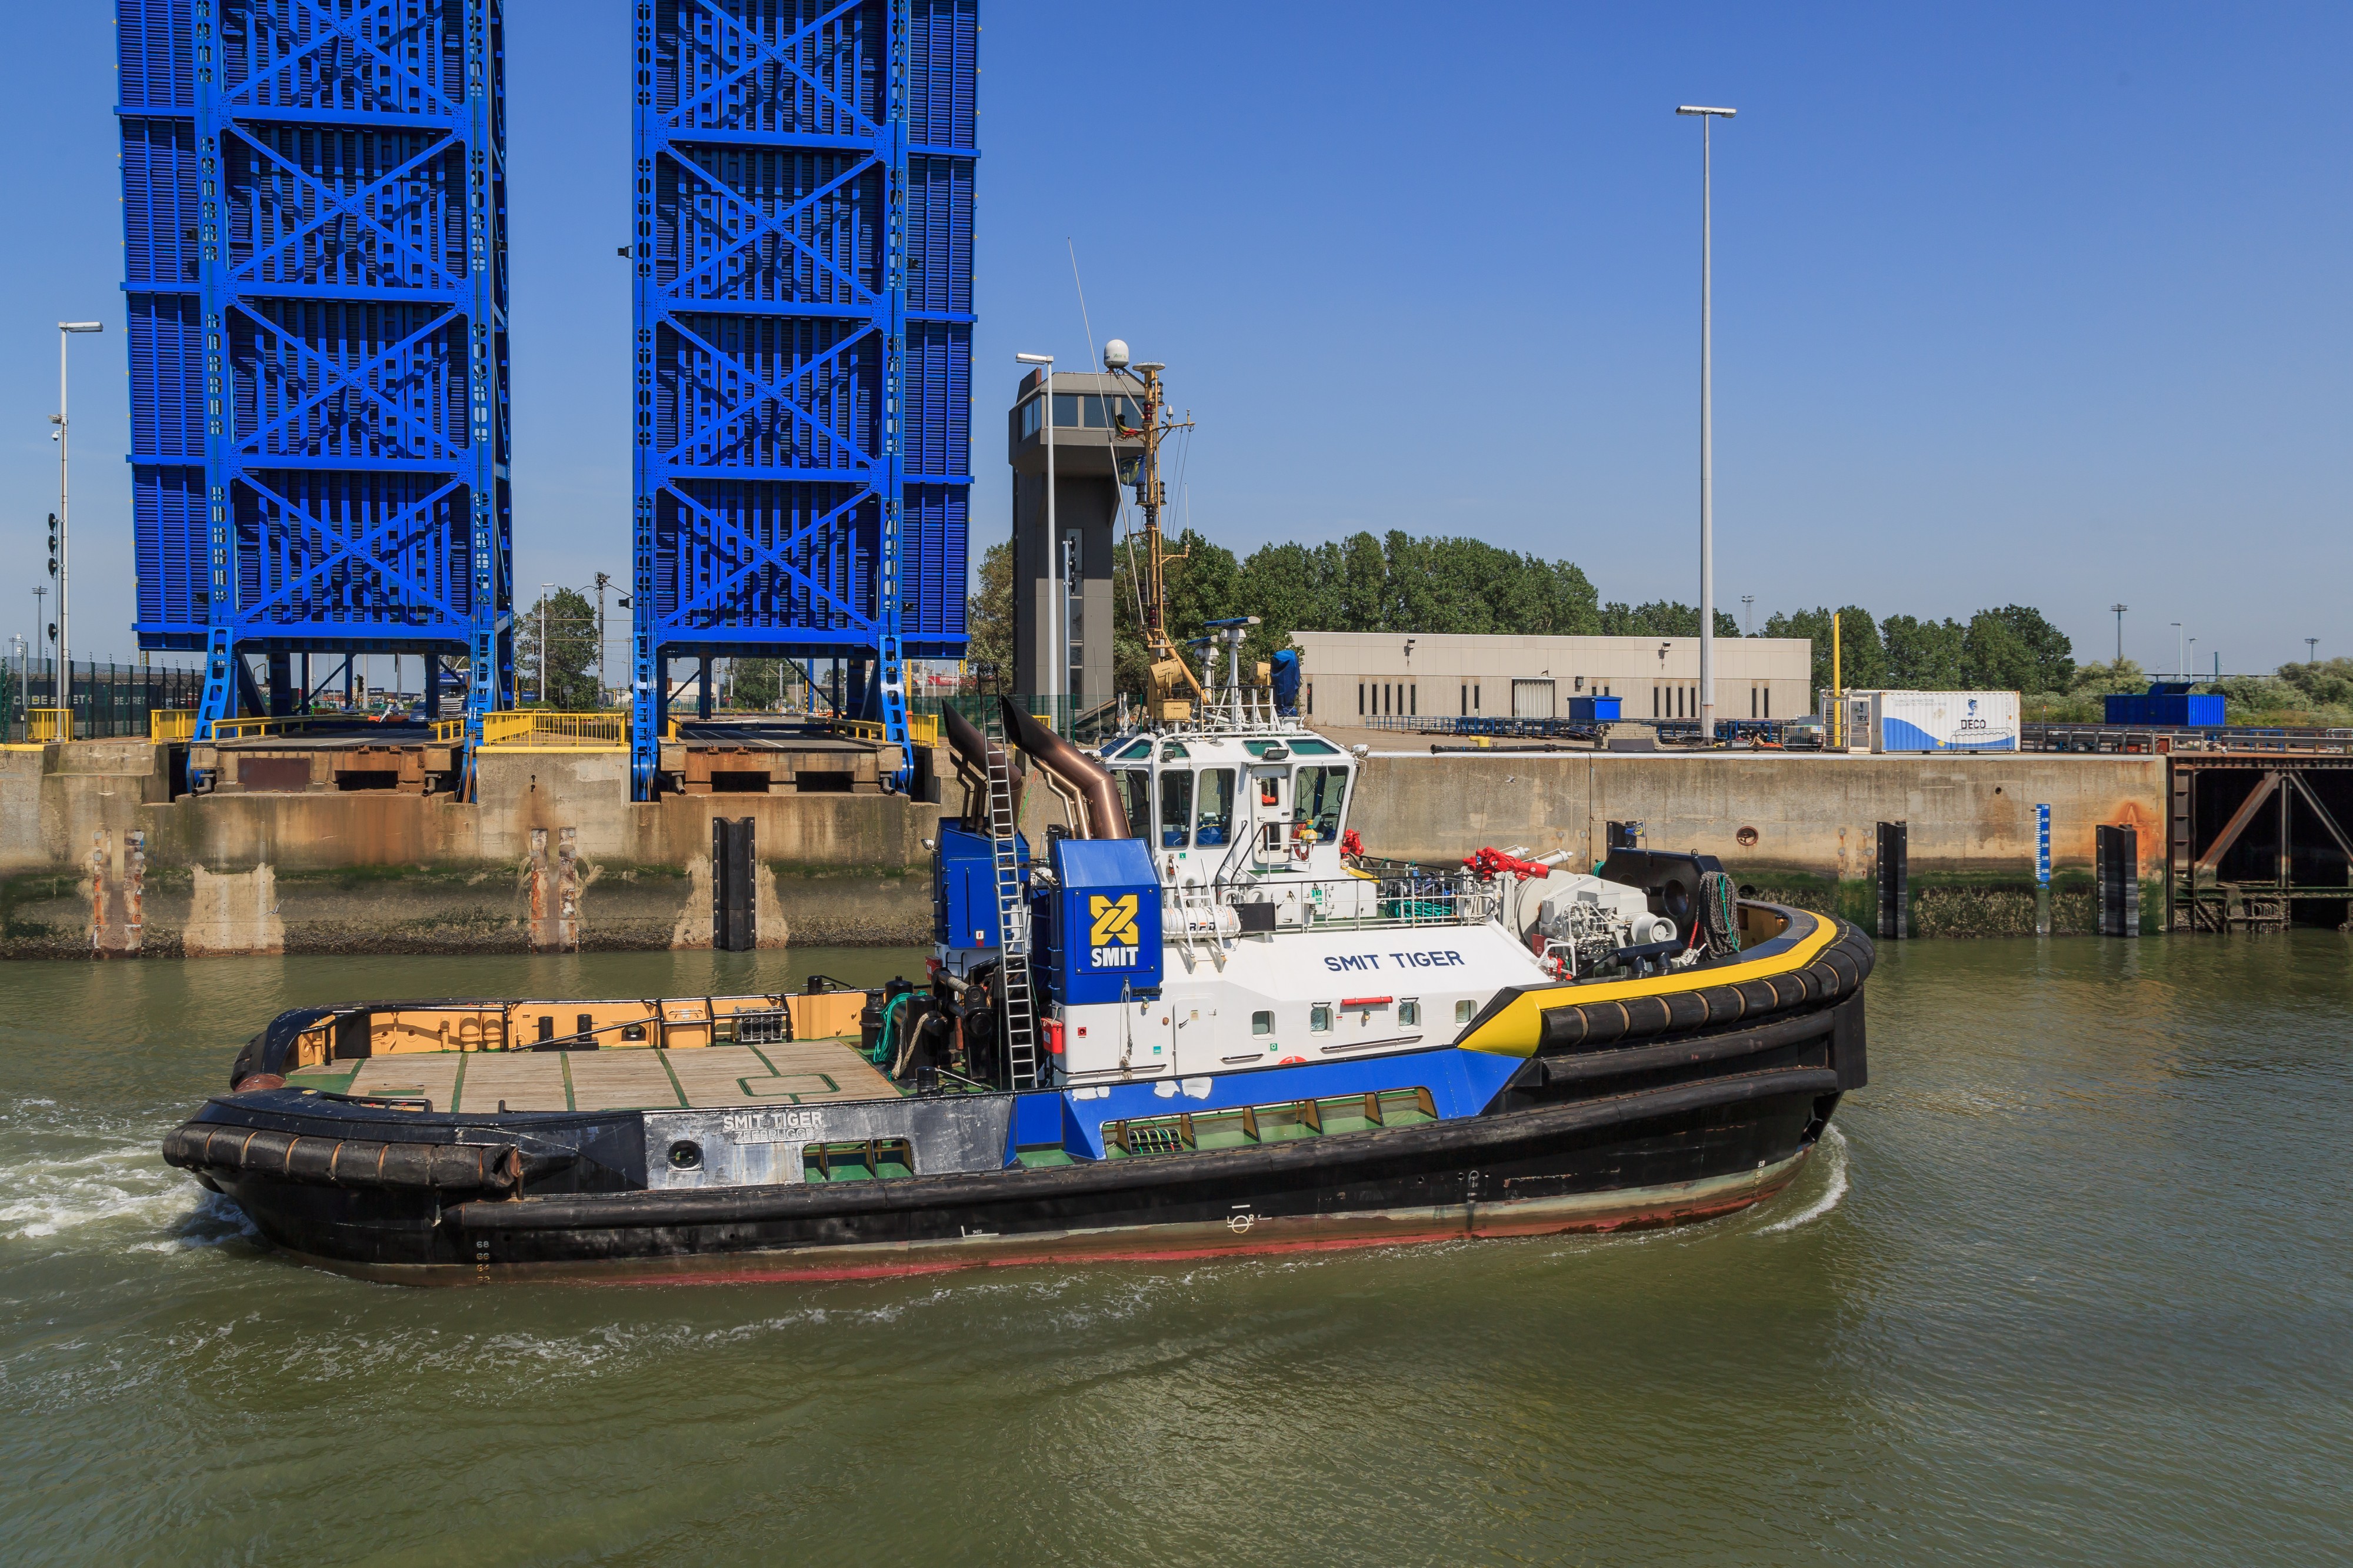 Zeebrugge Belgium Tugboat-Smit-Tiger-03